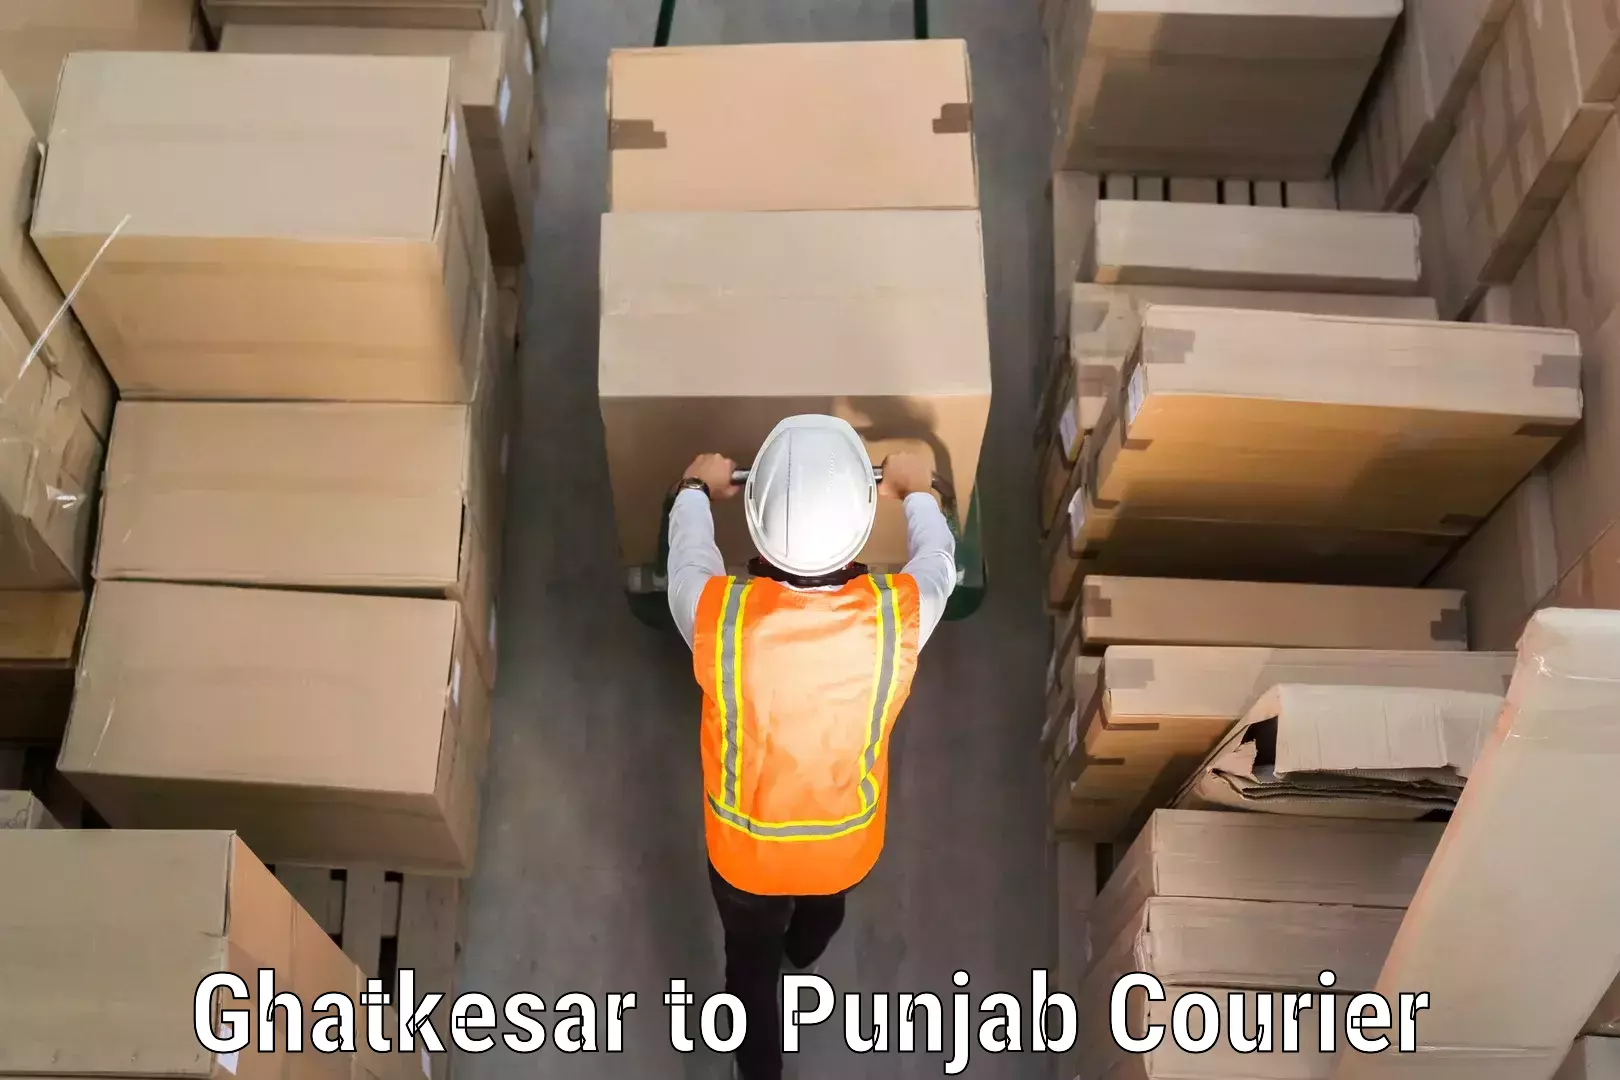 Door-to-door baggage service Ghatkesar to Punjab